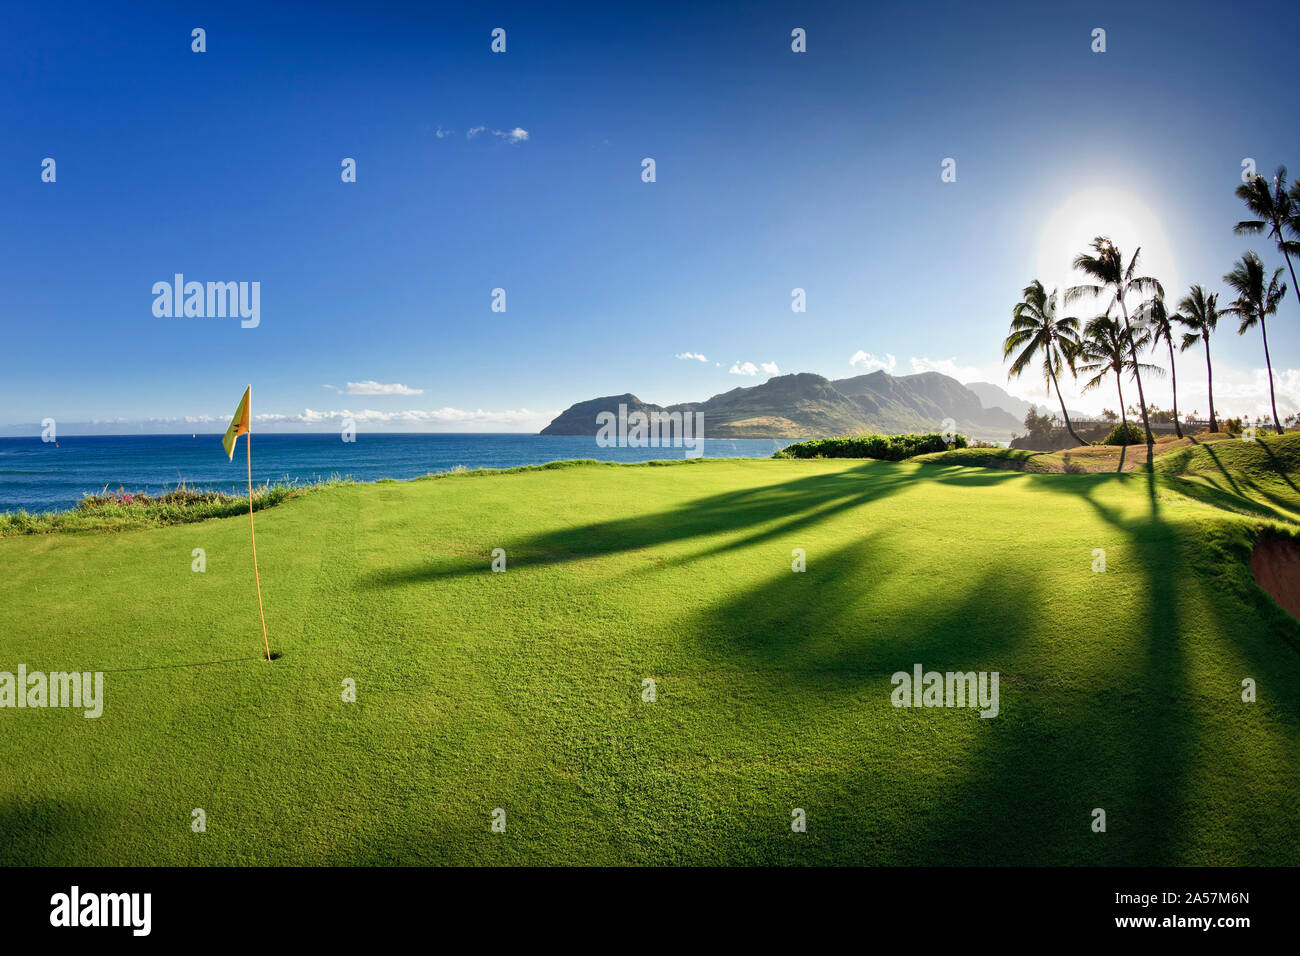 Golf flag in a golf course, Kauai Lagoons, Kauai, Hawaii, USA Stock Photo